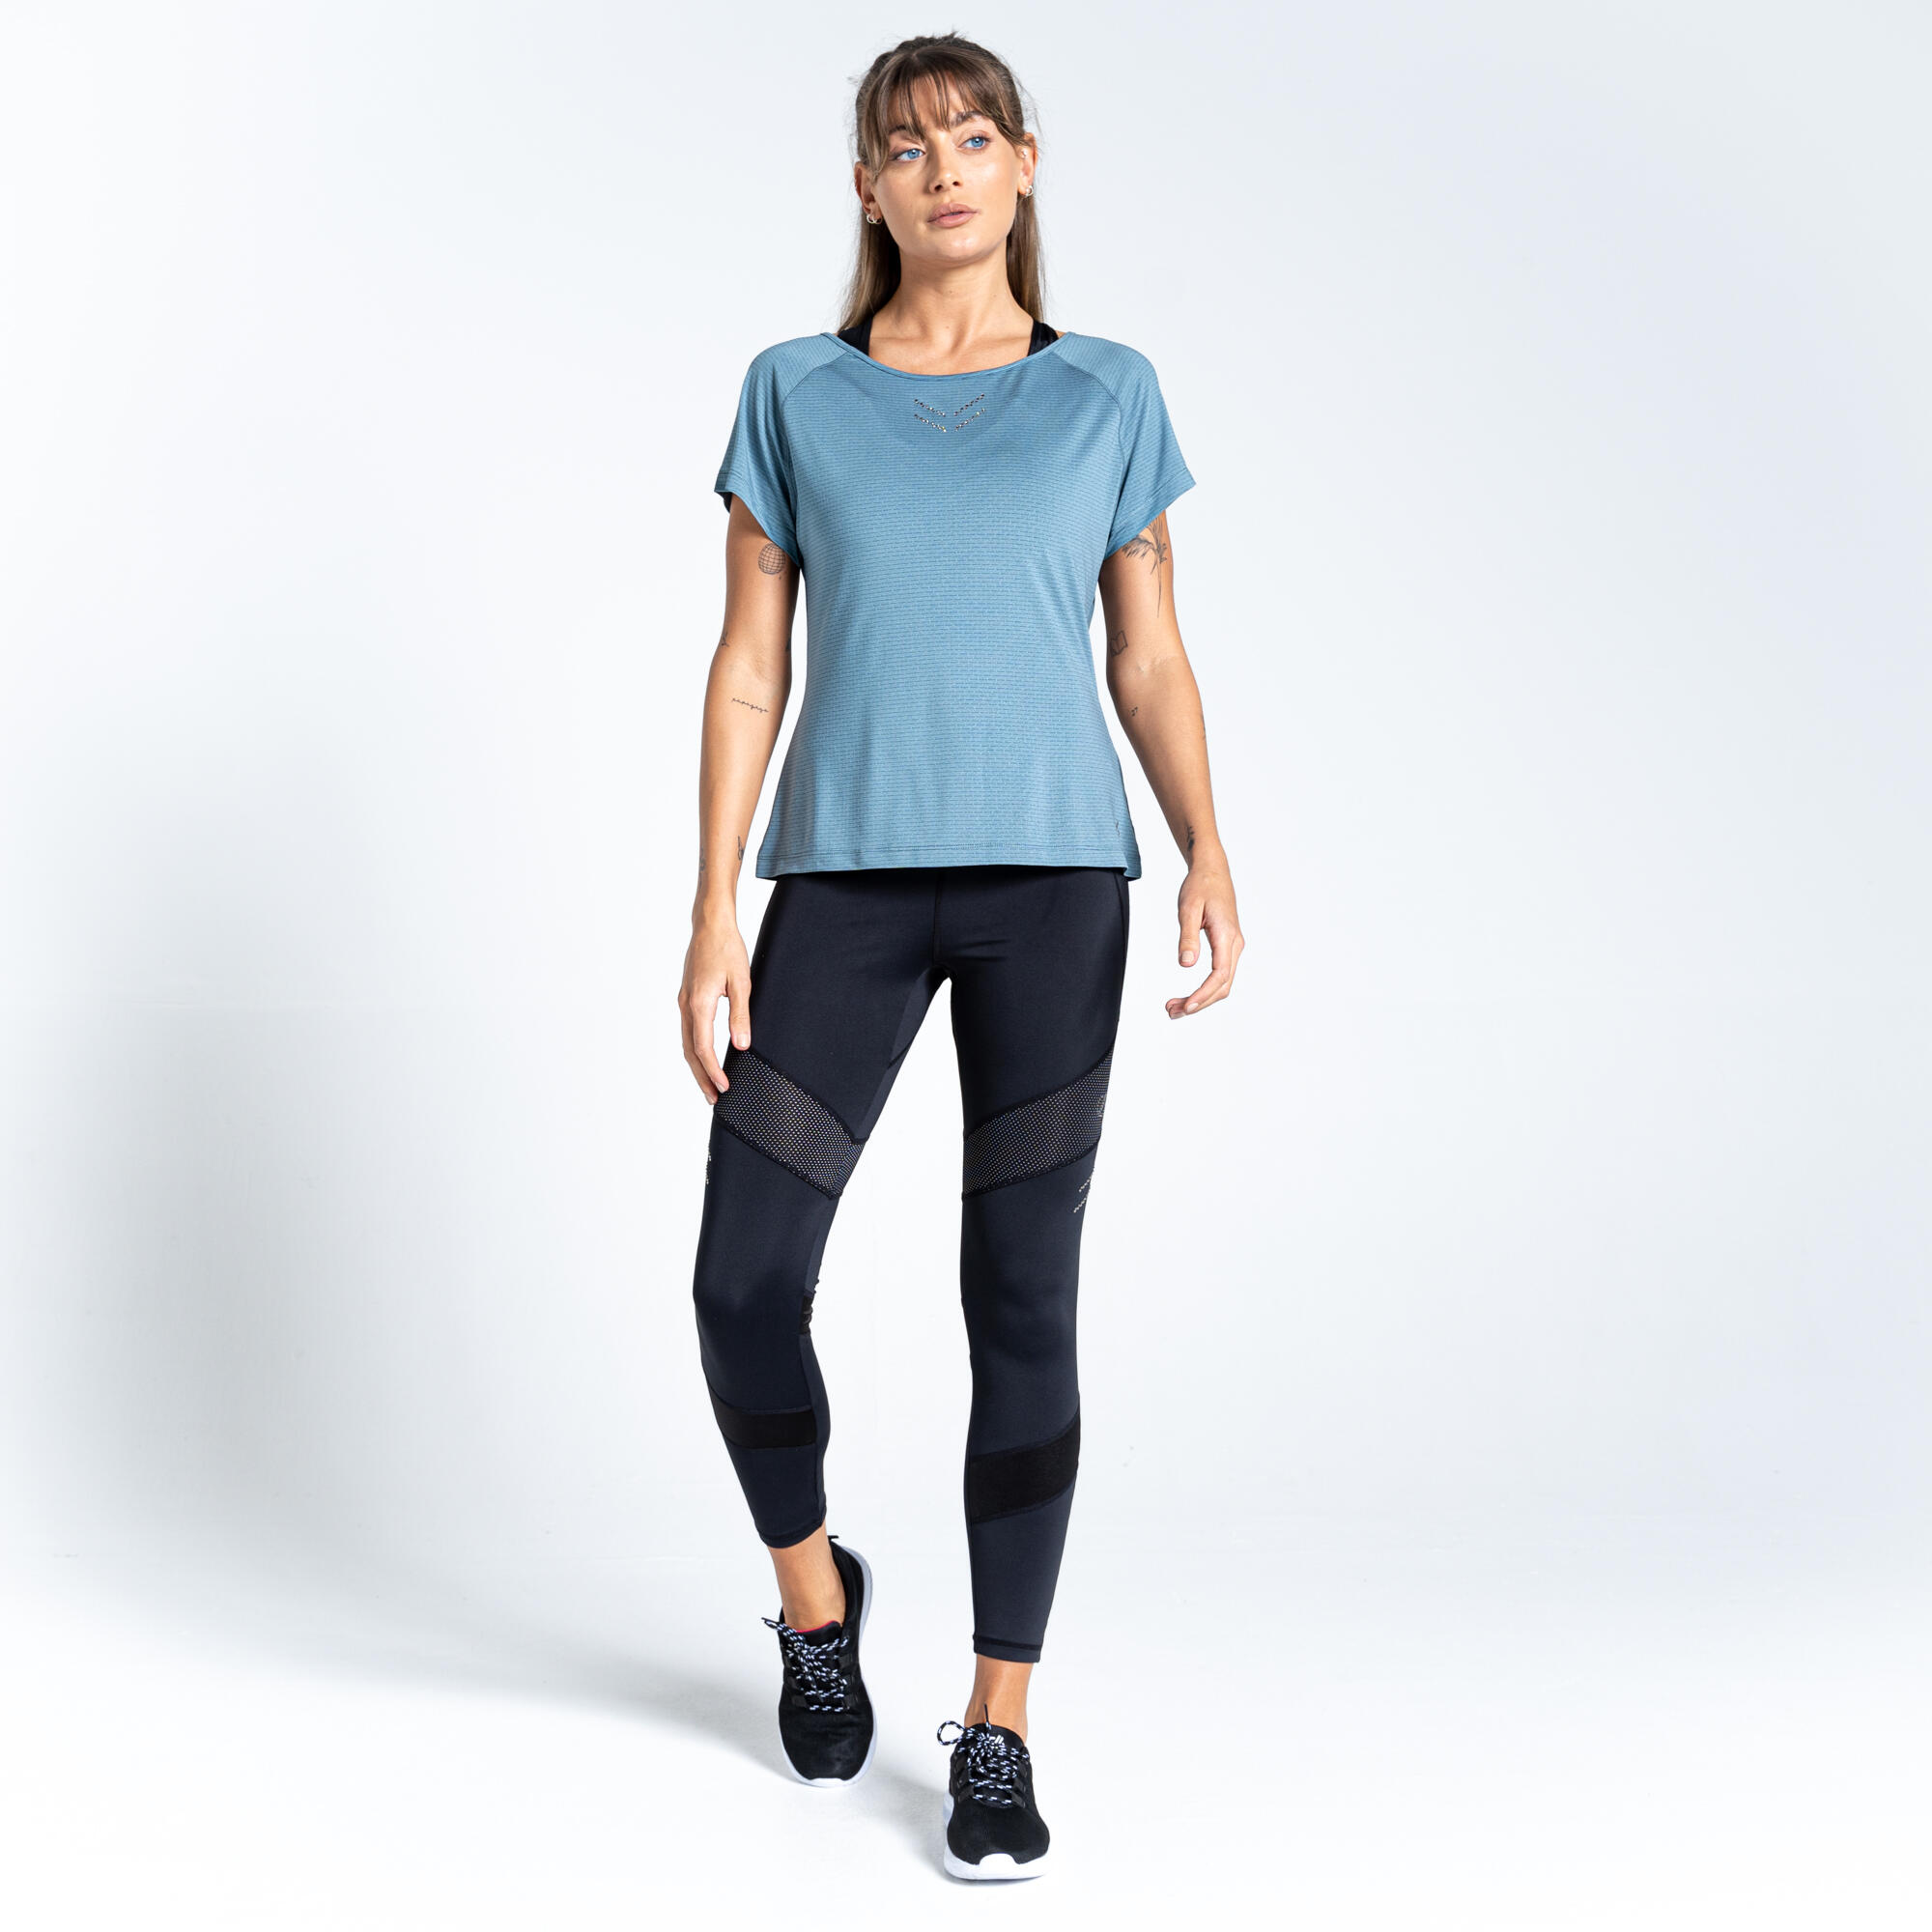 Cyrstallize Women's Fitness Short Sleeve T-Shirt - Blue Stone 2/5